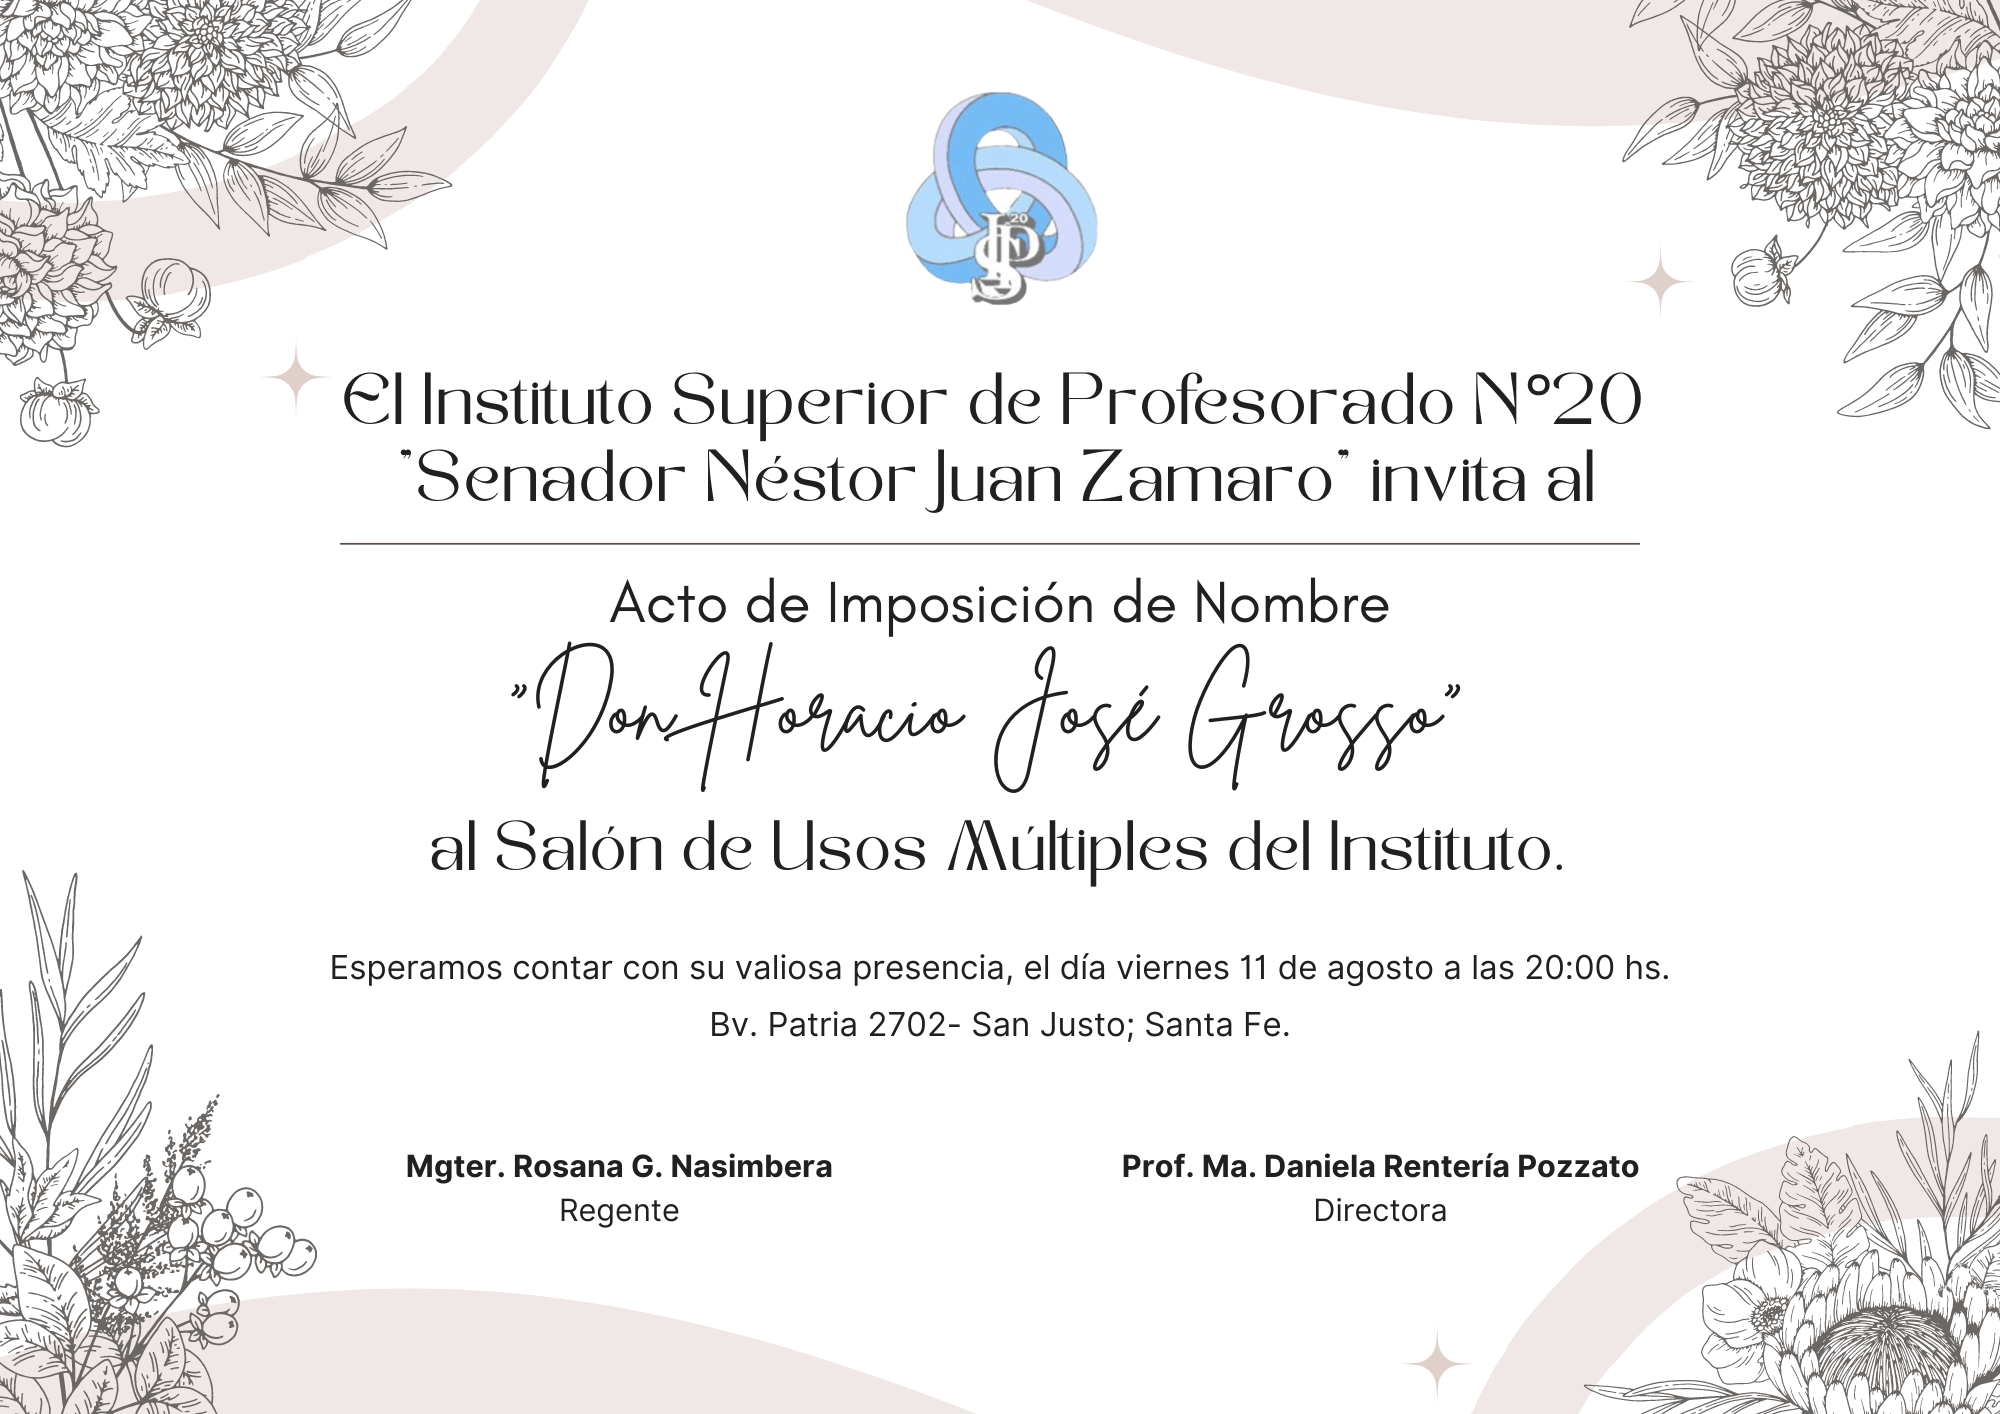 Acto de Imposición de Nombre “Don Horacio José Grosso” al S.U.M